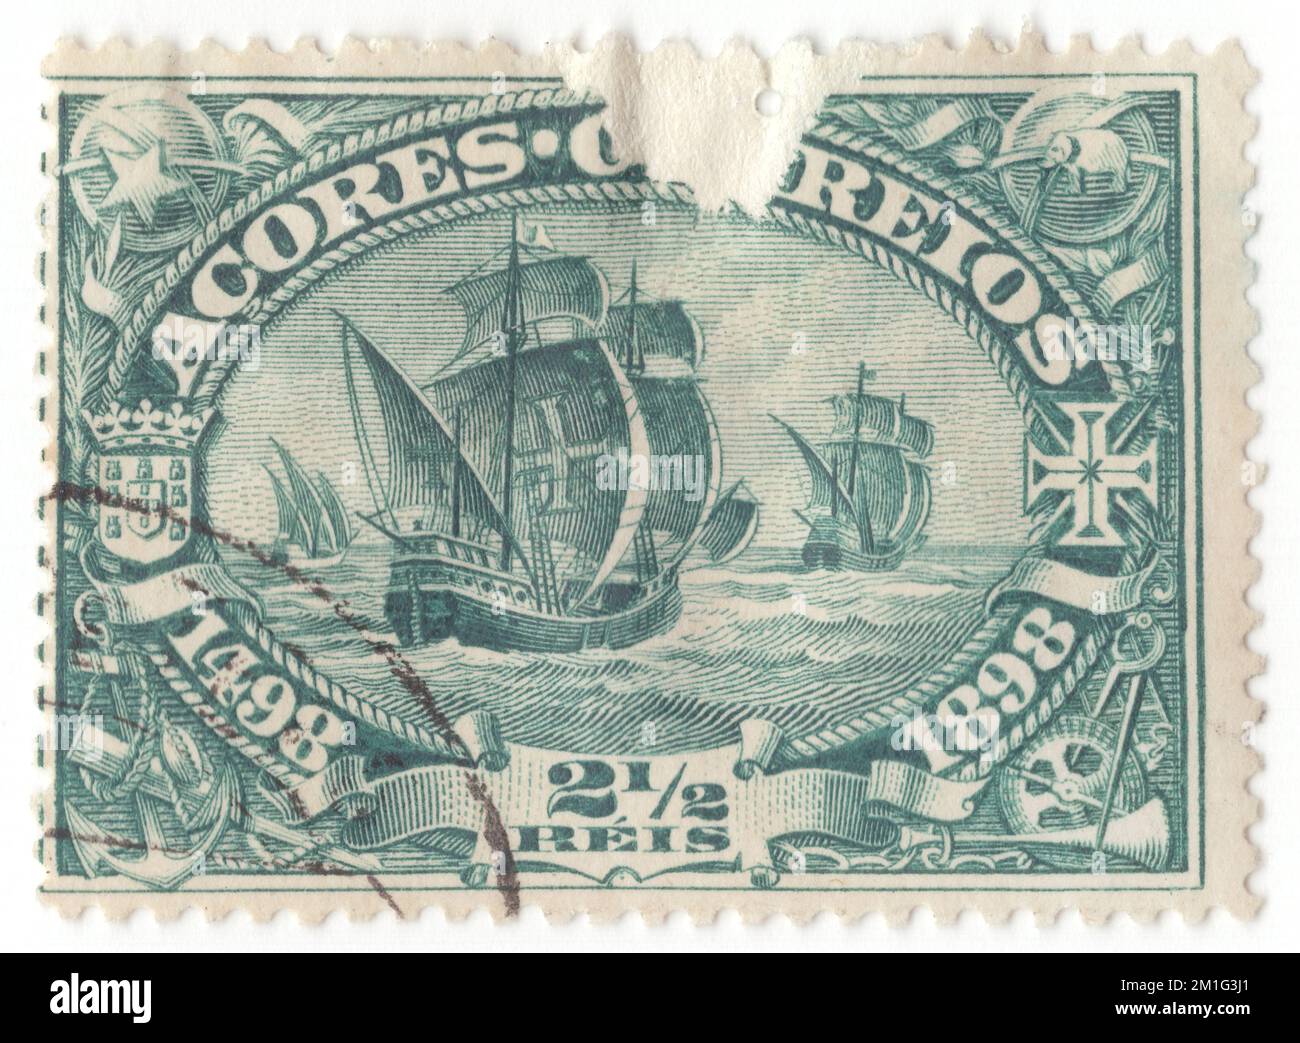 AÇORES - 1898 1 avril : timbre-poste bleu-vert 2½ reis représentant le départ de la flotte. Numéro de Vasco da Gama, quatrième centenaire de la découverte par Vasco da Gama de la route vers l’Inde. Le voyage de Vasco da Gama en Inde en 1497-1498 a fait l'objet d'une question de 1898. Les dessins de Vasco da Gama ont également été utilisés dans les colonies africaines et ont été inscrits en Afrique au lieu du Portugal. C'était la seule question générale pour les colonies. Vasco da Gama, 1st comte de Vidigueira, était un explorateur portugais et le premier européen à atteindre l'Inde par mer. Son voyage initial en Inde en passant par le cap de bonne espérance Banque D'Images